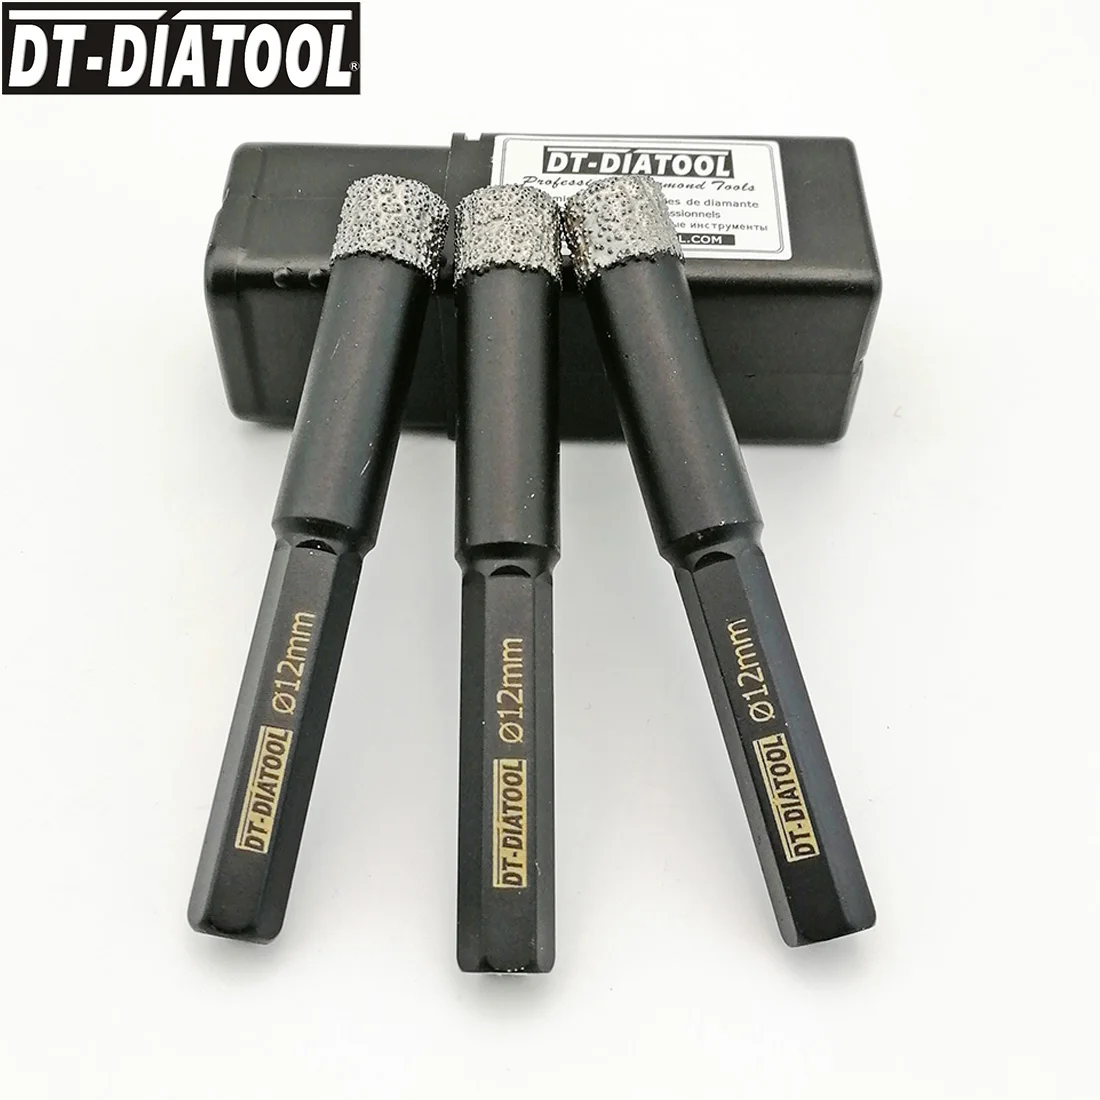 DT-DIATOOL 3tk Dia12mm Kuiv Tolmuimeja Brazed teemantpuurimine, Natuke Kuusnurk Varre Auk Nägi, Graniit, Marmor Keraamiline Plaat Drill Core Bit Pilt 2